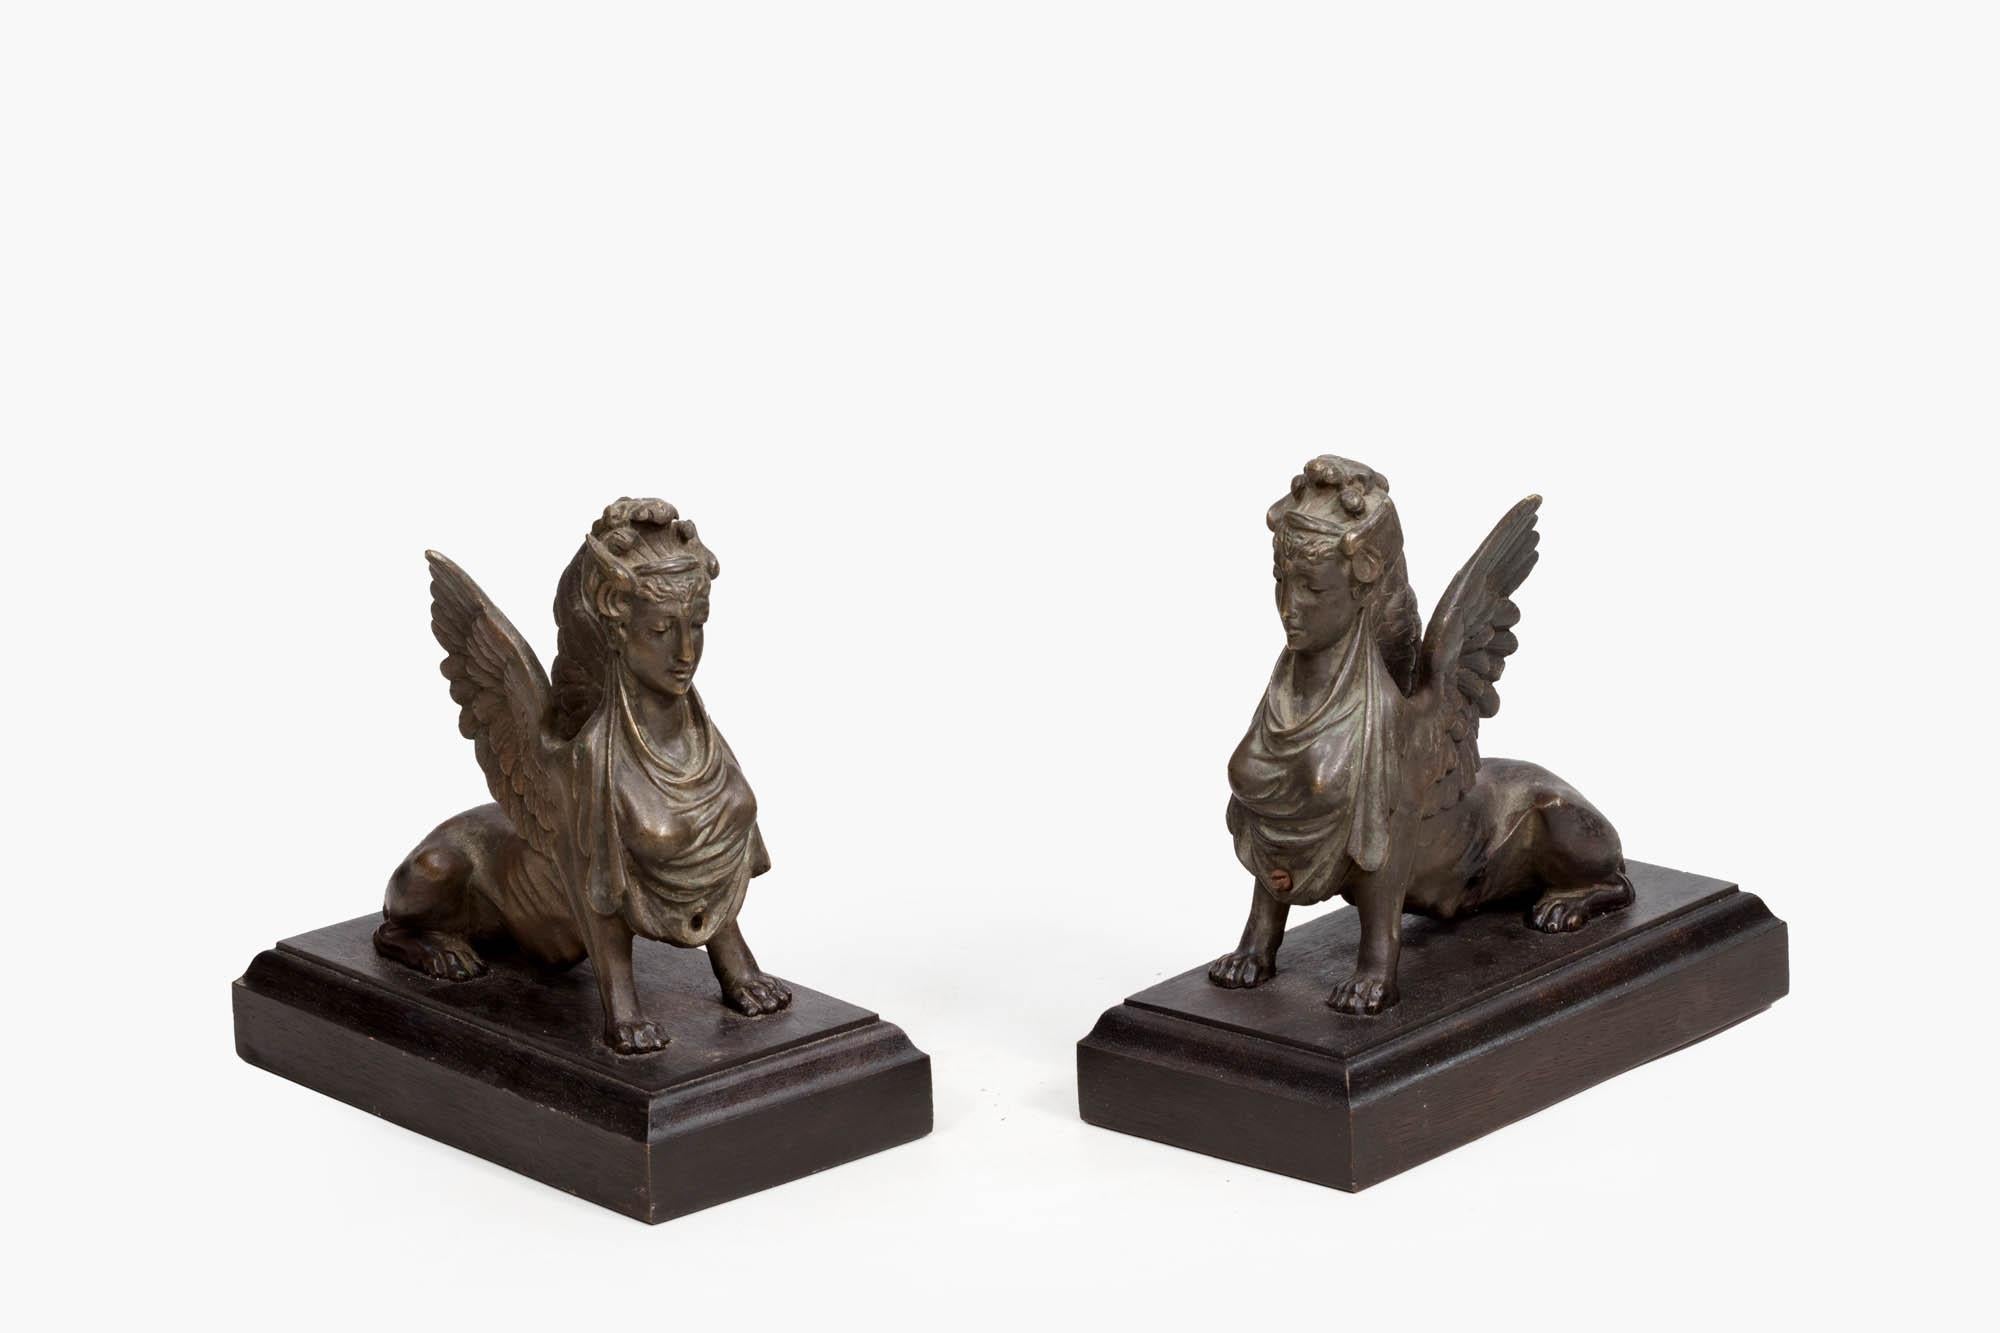 Paire de sphinx en bronze du XIXe siècle, de style néo-égyptien, dans des poses allongées, assis sur des socles rectangulaires en bois massif. Une paire bien détaillée avec des ailes d'aigle étendues et ramenées sur des corps de lion, des coiffes